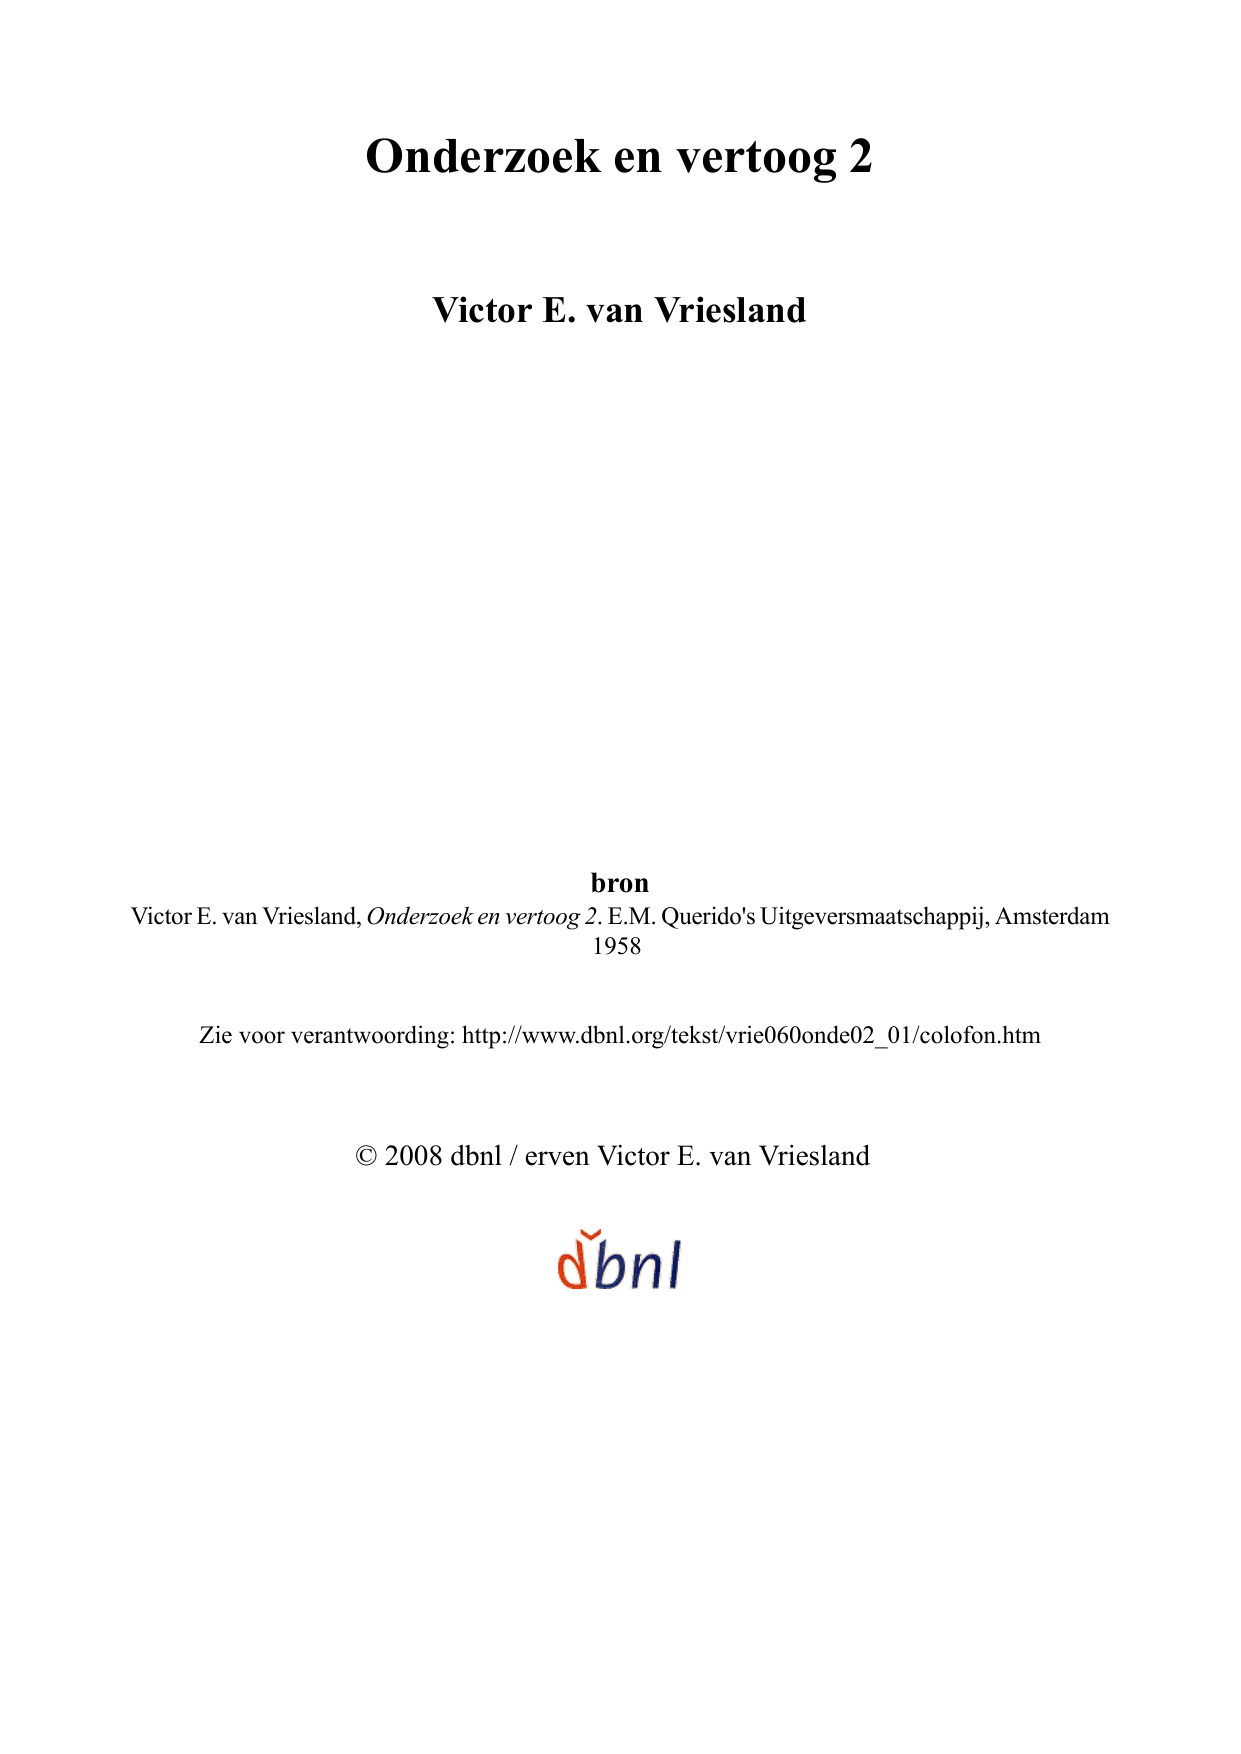 Der Nina Woude nackt Van  Document 2728714